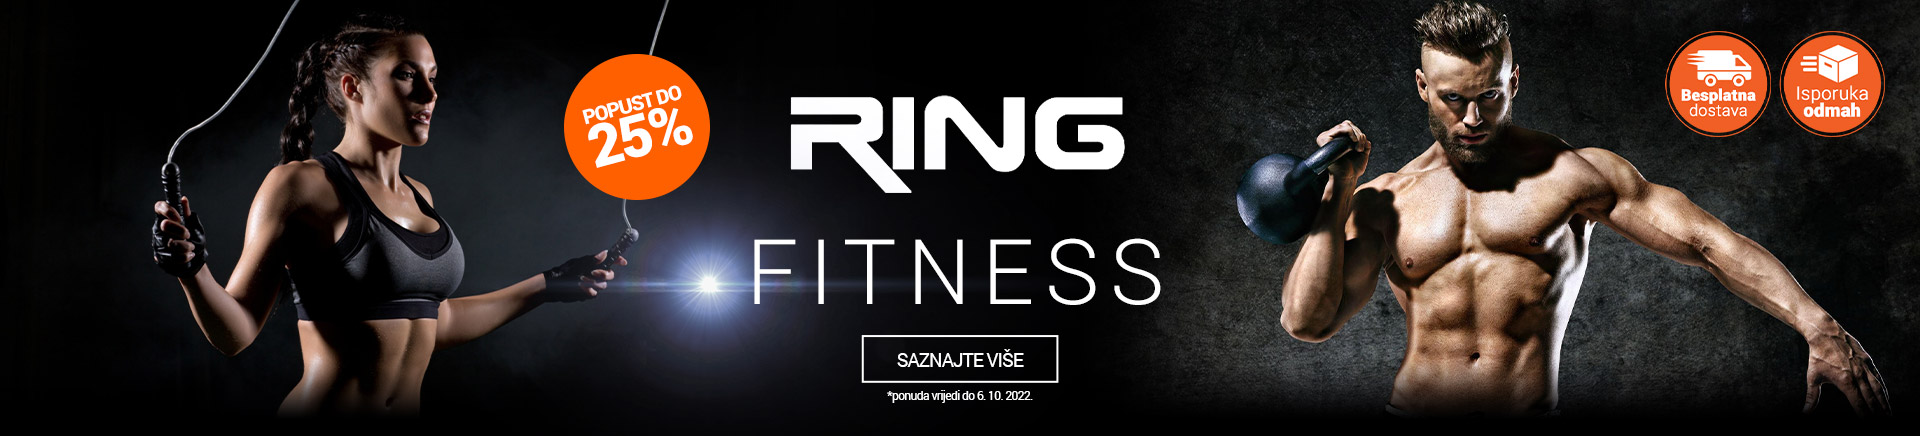 BA Ring Fitness 25posto MOBILE 380 X 436.jpg